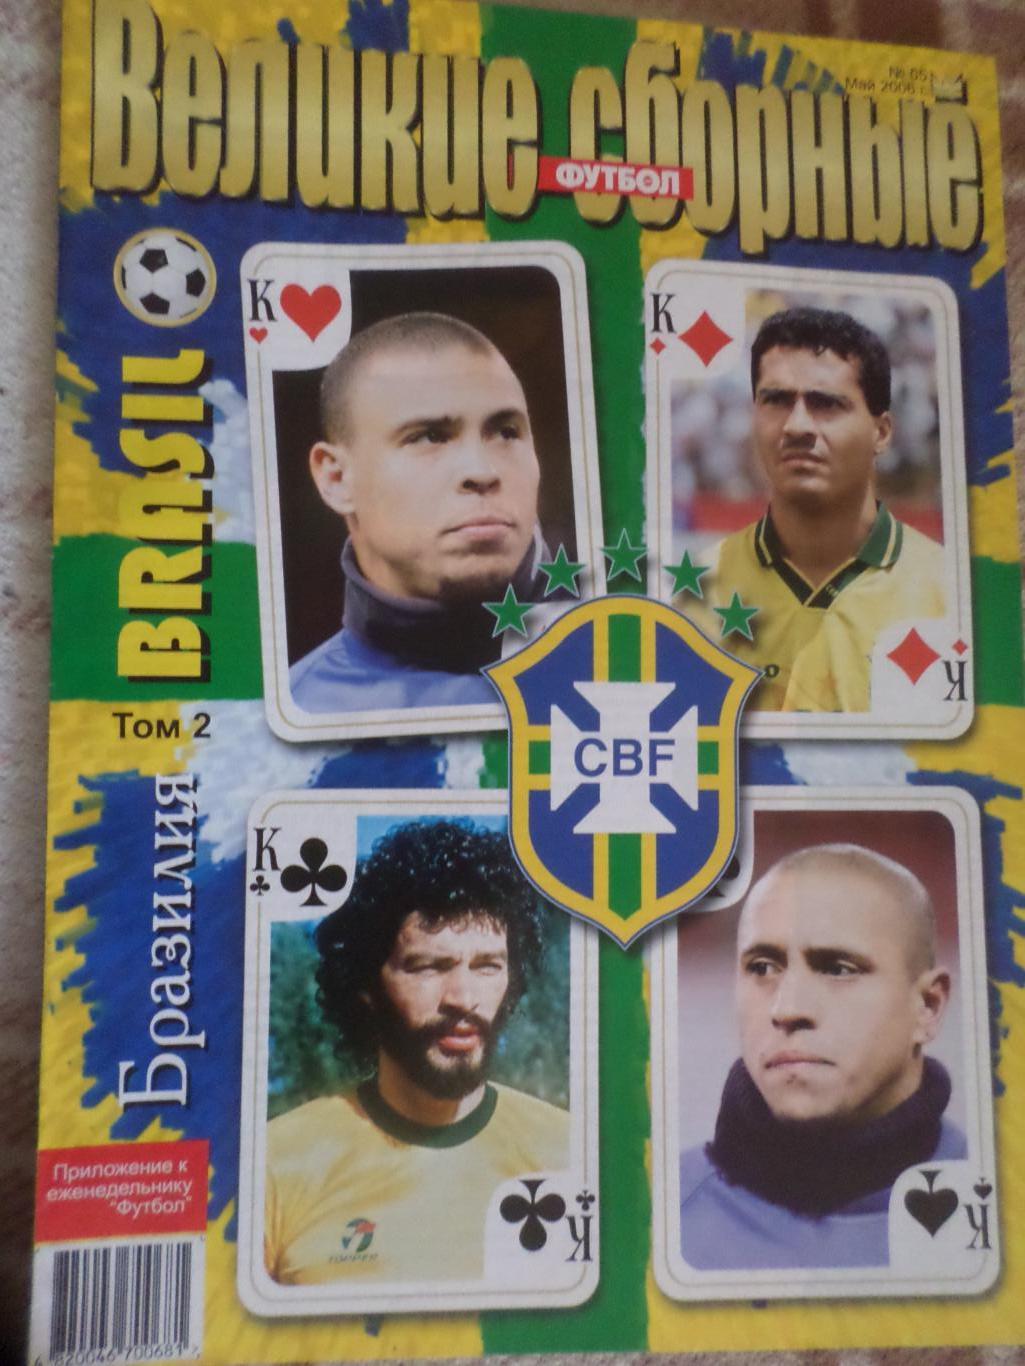 Еженедельник Футбол (Киев) Спецвыпуск 5 2006 г Великие сборные Бразилия т. 2